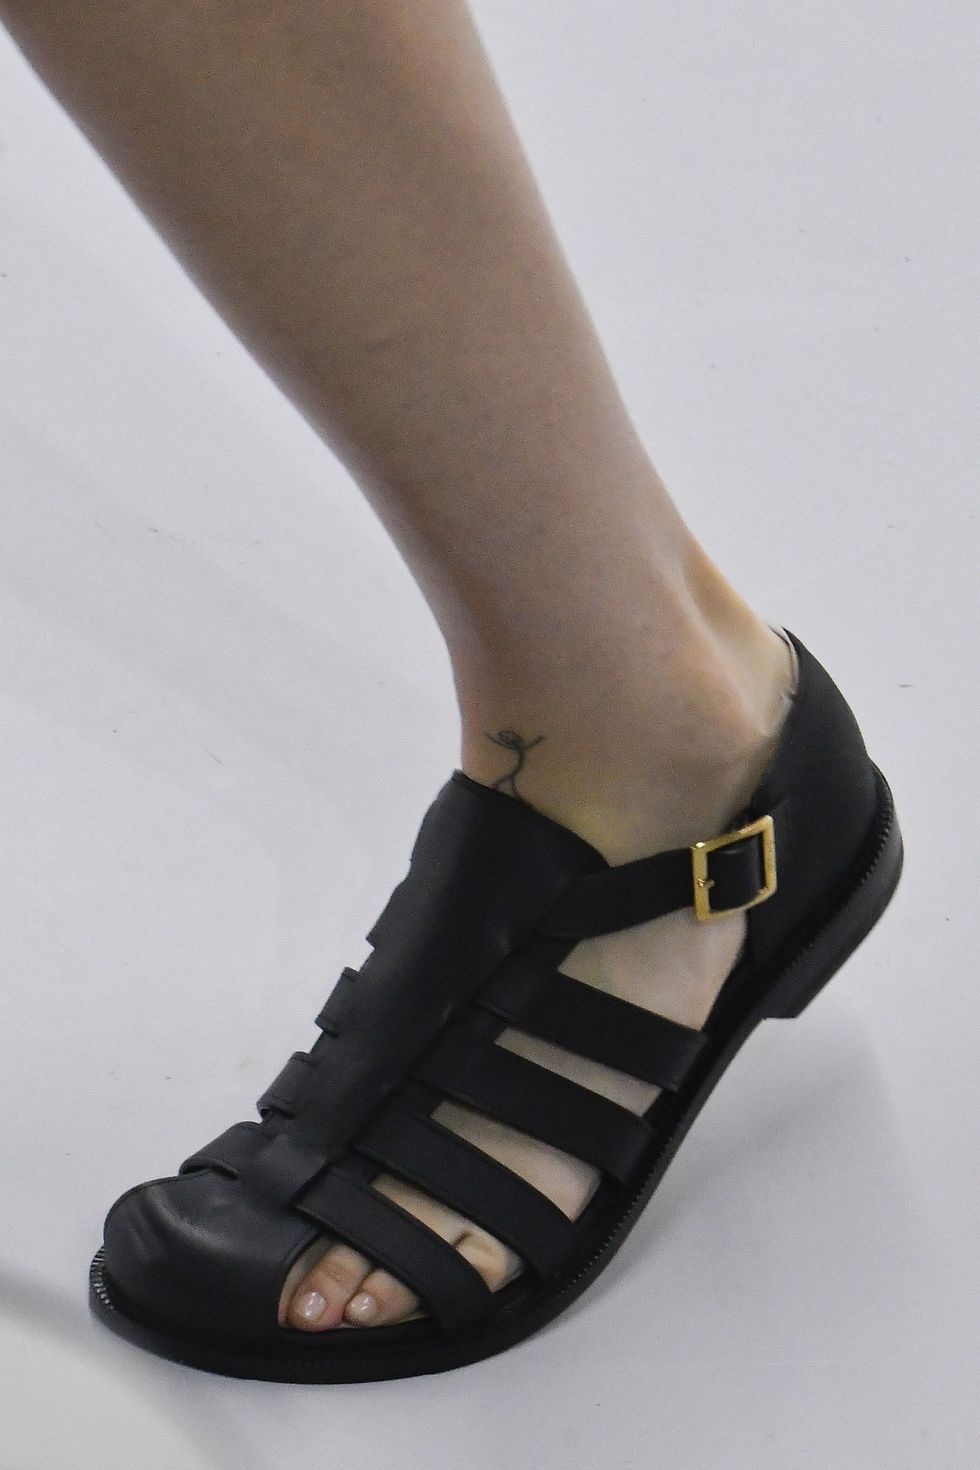 JW Anderson thiết kế khóa gài màu vàng làm điểm nhấn cho đôi sandals ngư dân màu đen dáng bệt cổ điển (Ảnh: JW Anderson).